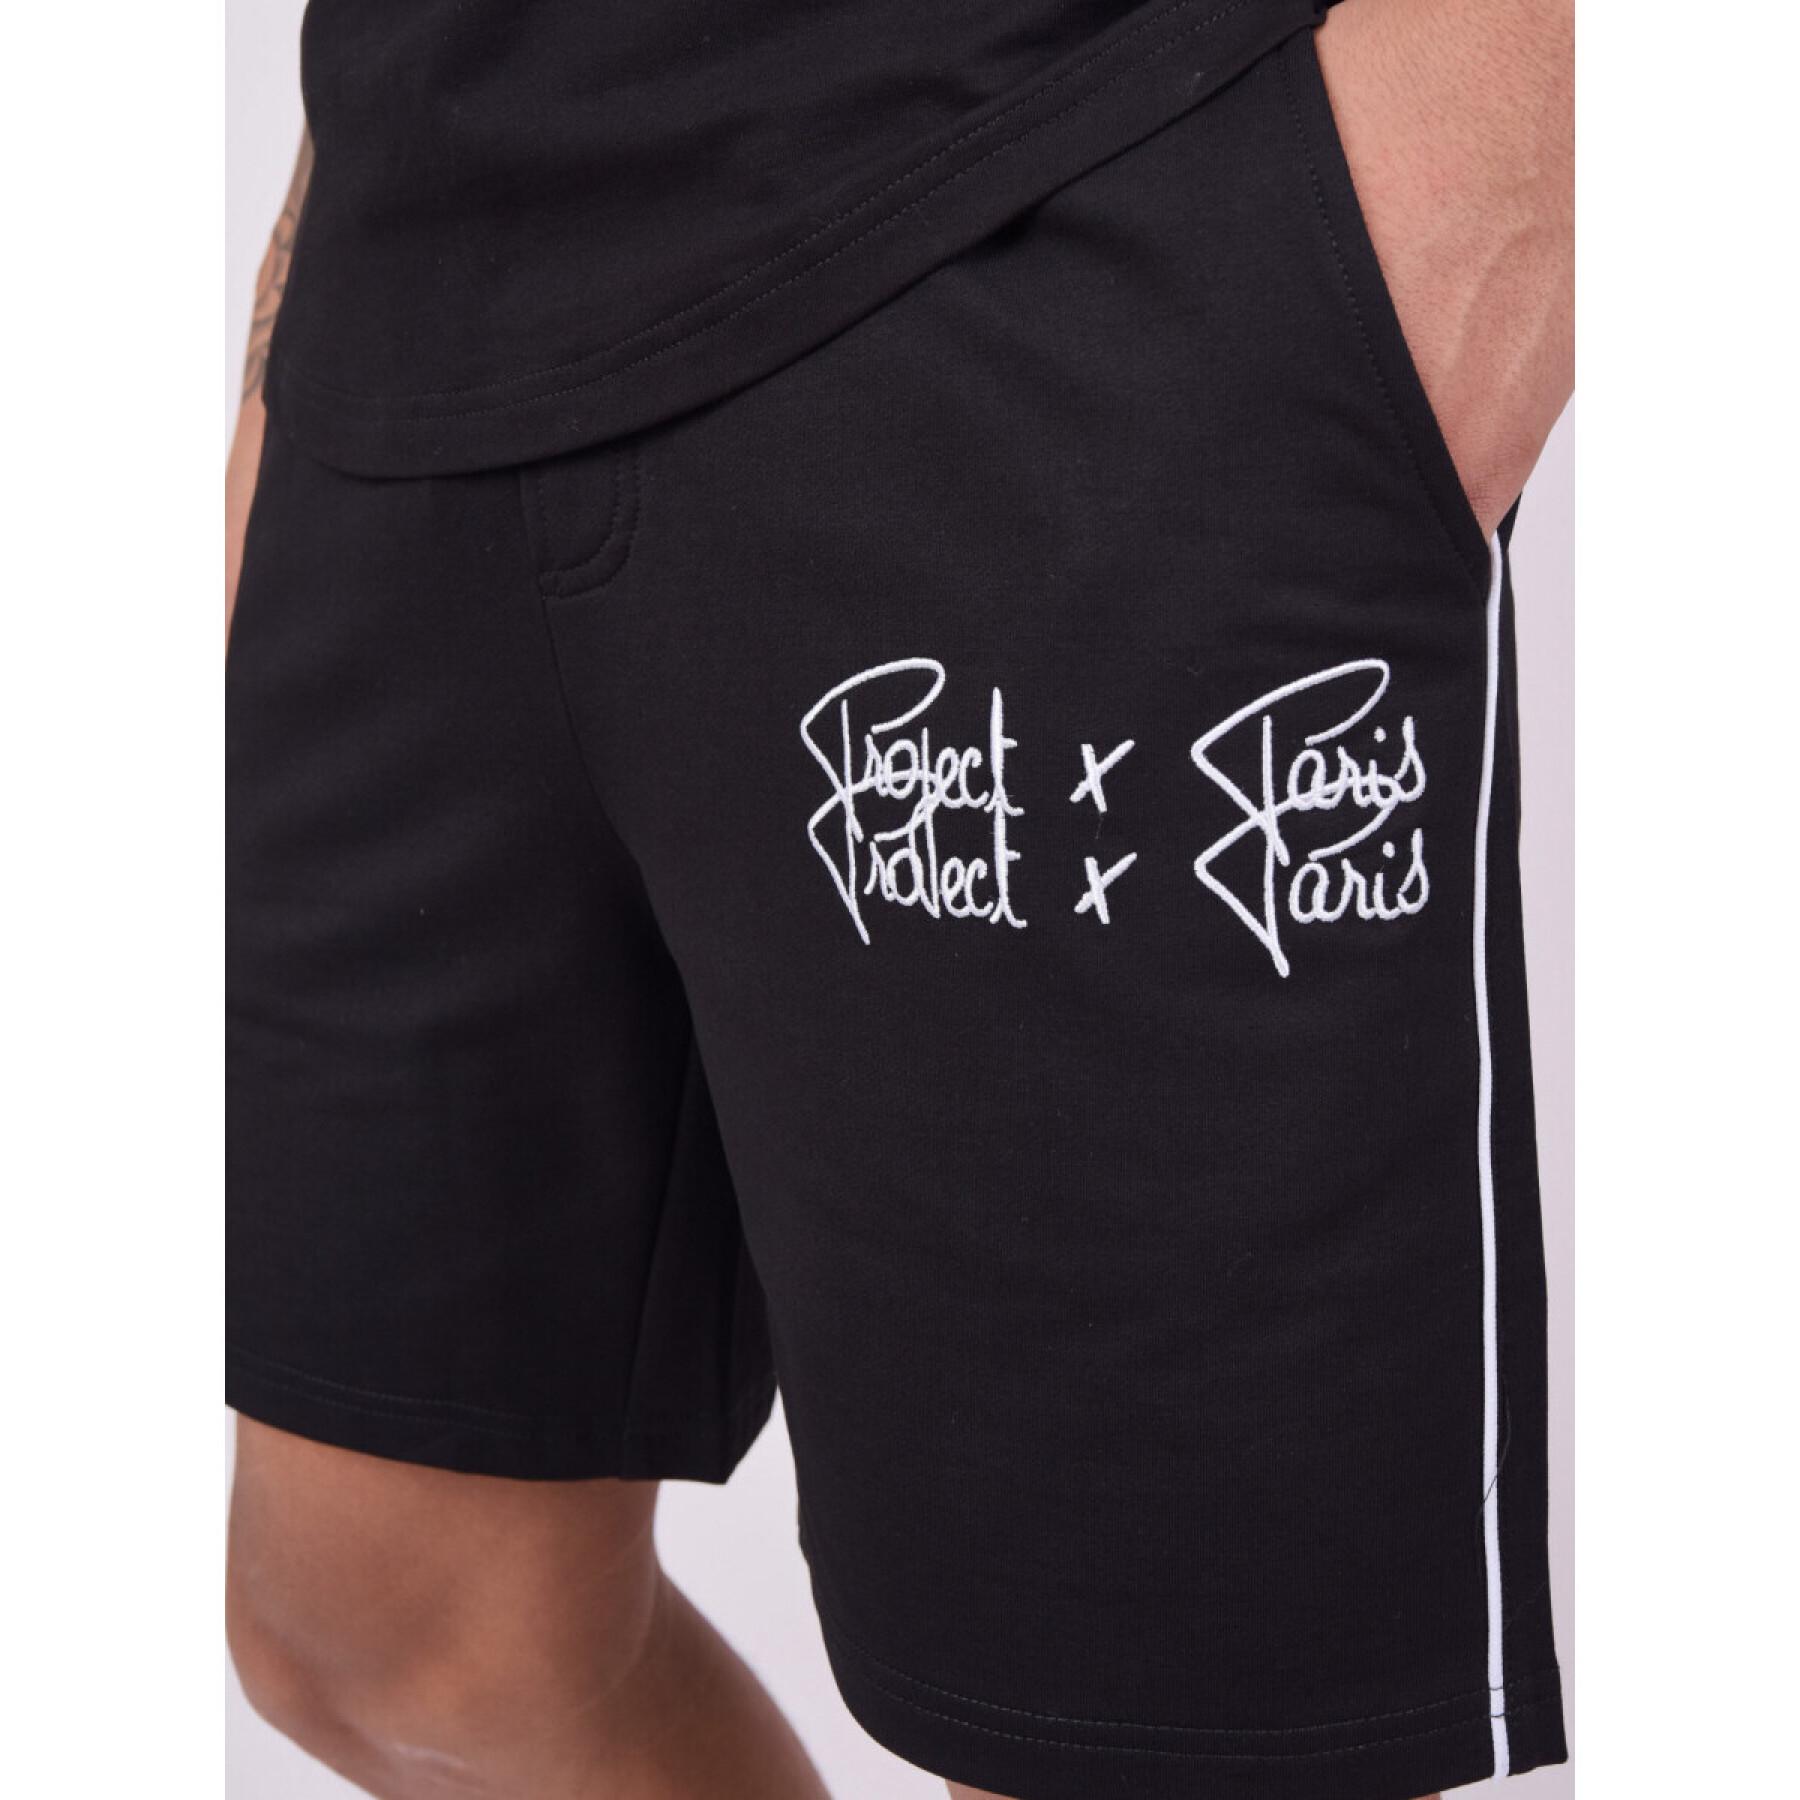 Double logo shorts Project X Paris Basic